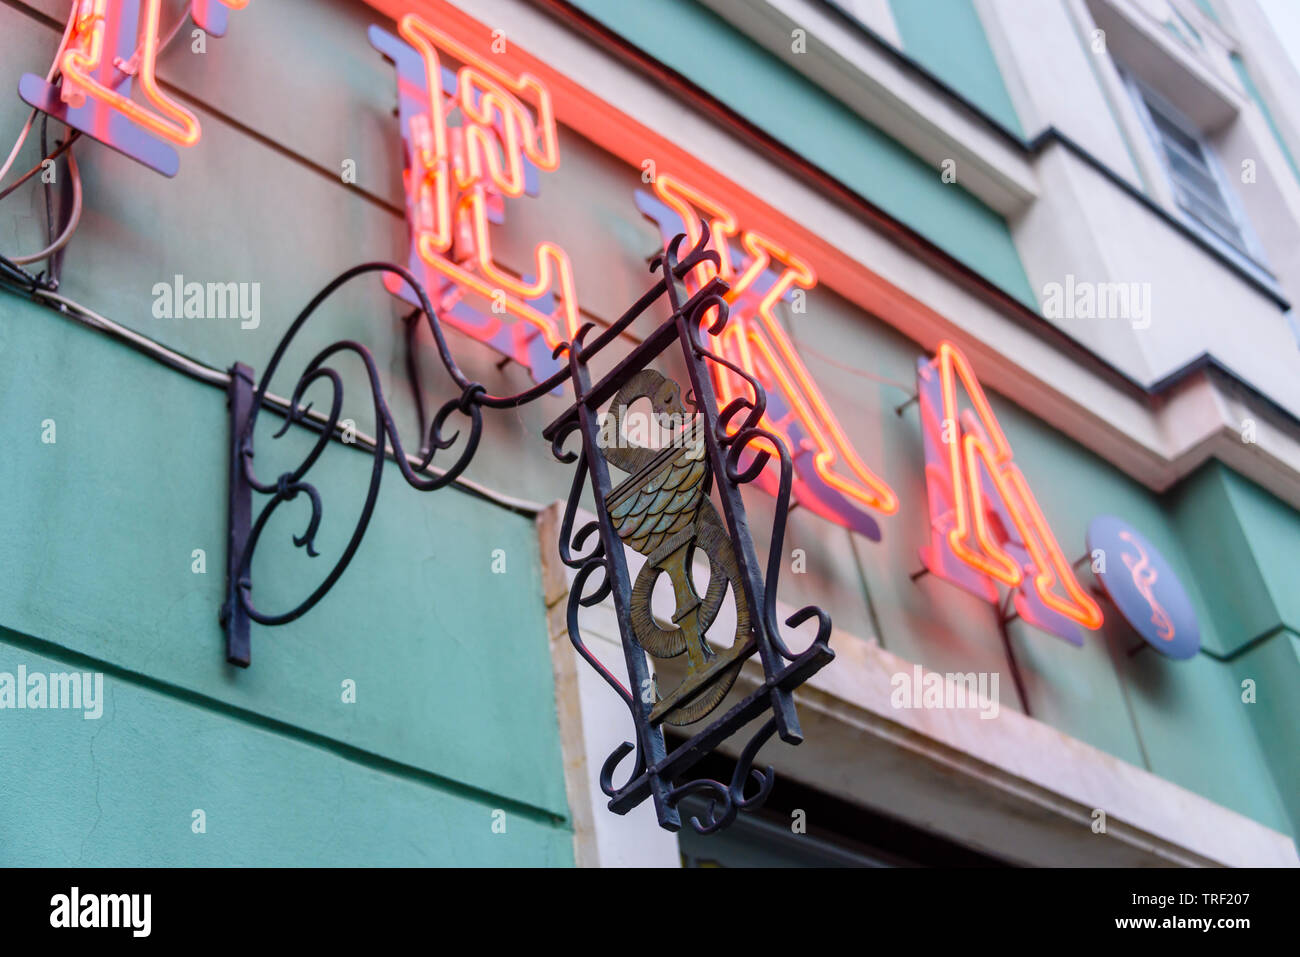 Señal de neón diciendo "Apteka" con un símbolo de serpiente tradicional fuera de una tienda de químicos farmacéuticos, Wroclaw, Wroclaw, Polonia, Wroklaw Foto de stock